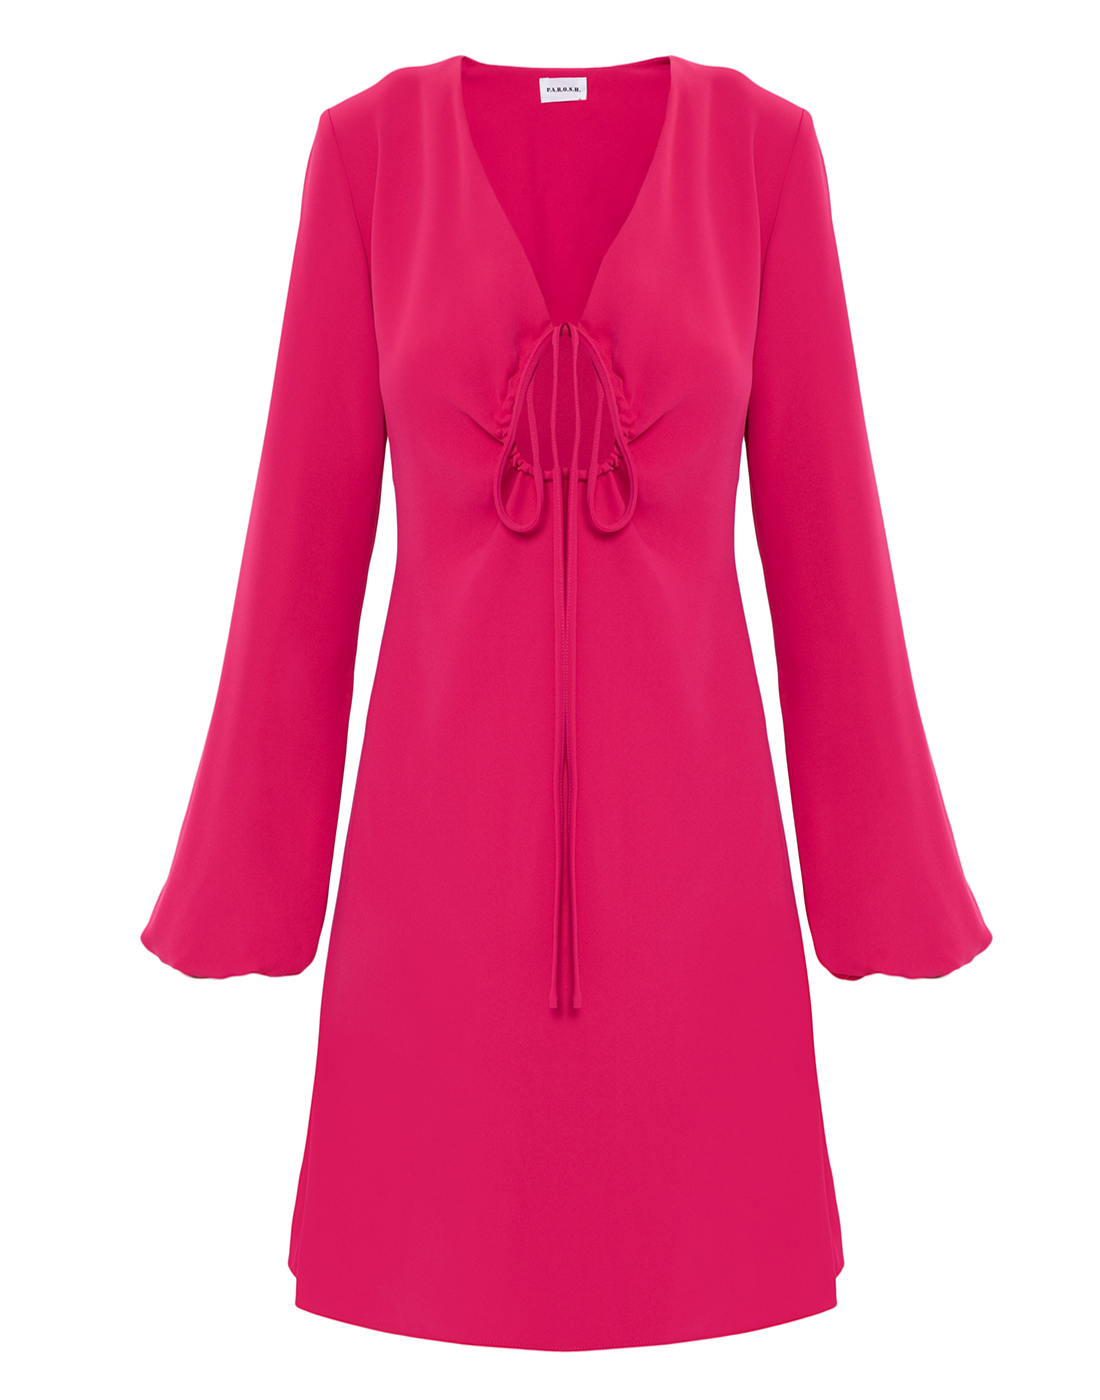 Платье розовое женское P.A.R.O.S.H. SPOKER/D725216/042-1